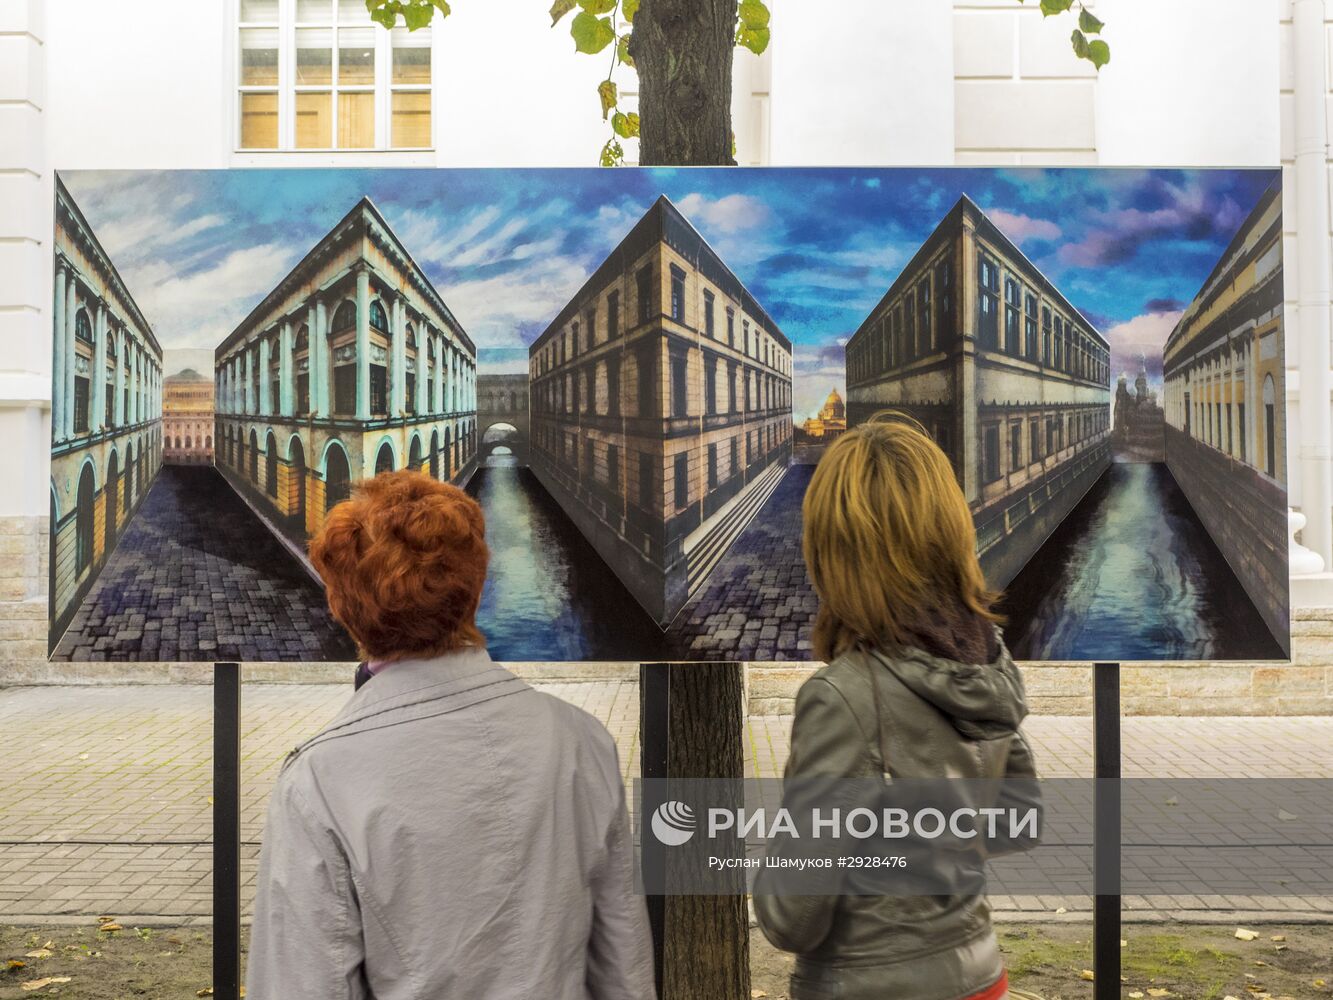 Выставка-фестиваль оптических иллюзий в визуальном искусстве FocusFest в Санкт-Петербурге